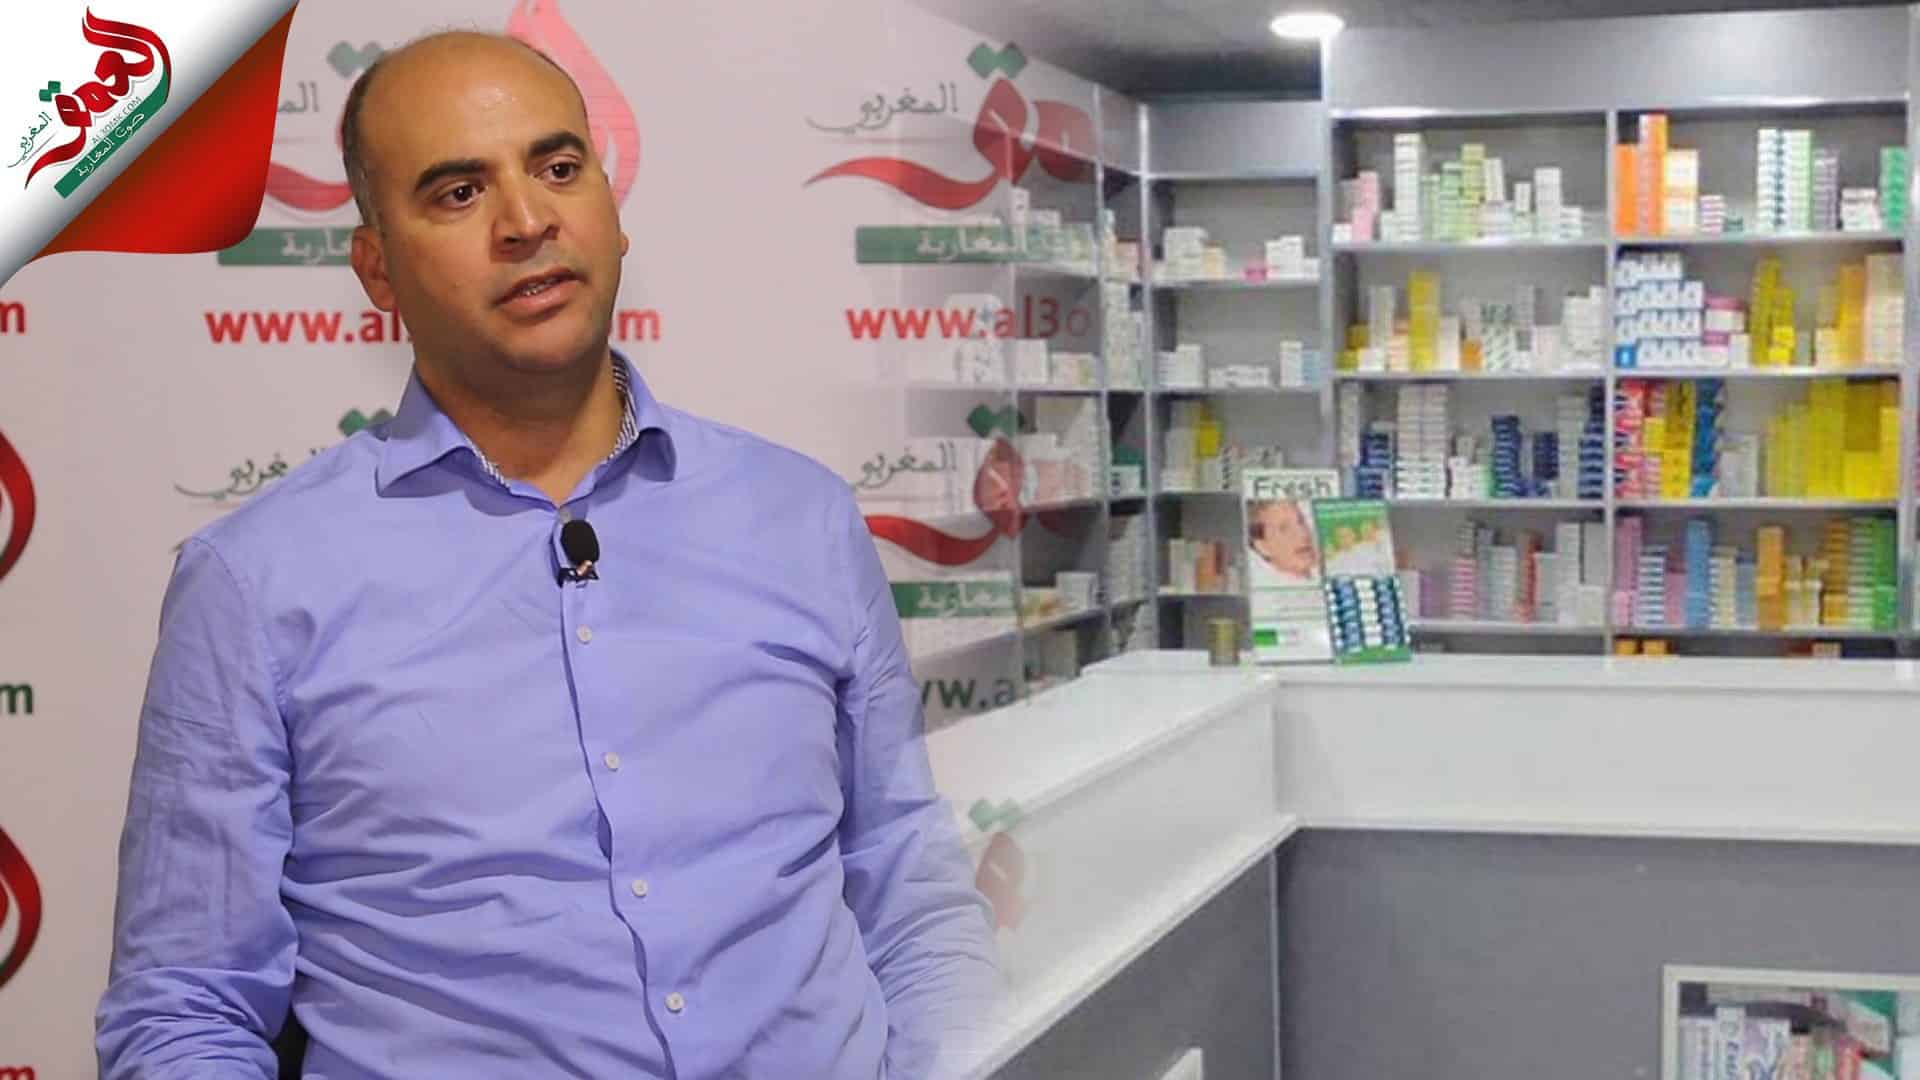 محمد الزروالي دكتور صيدلاني